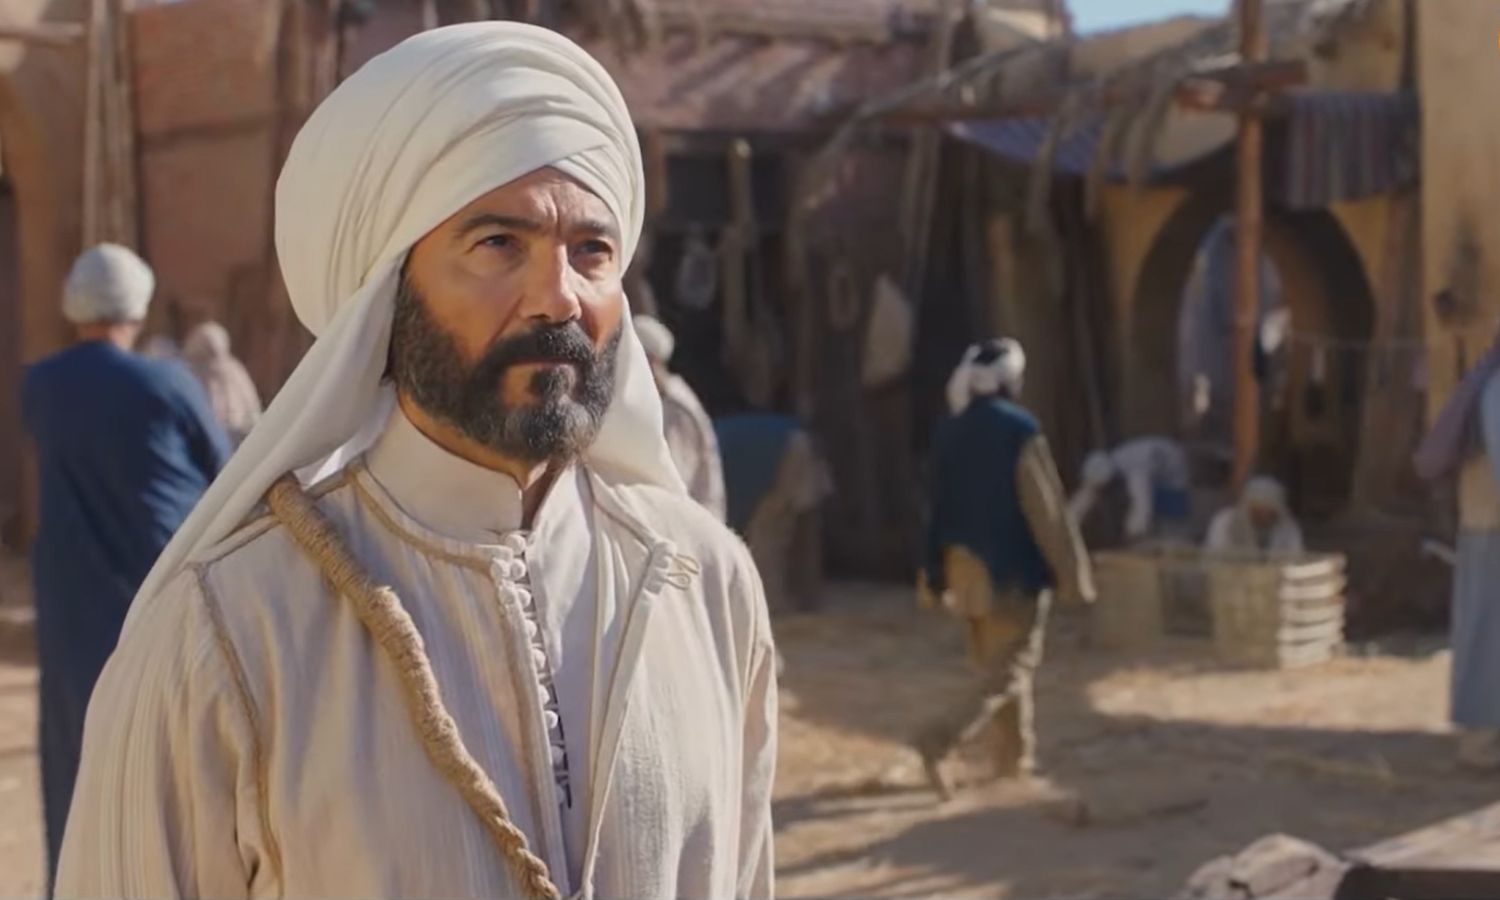 الممثل المصري خالد النبوي بدور الإمام الشافعي في مسلسل "رسالة الإمام" (تريلر العمل/ لقطة شاشة)